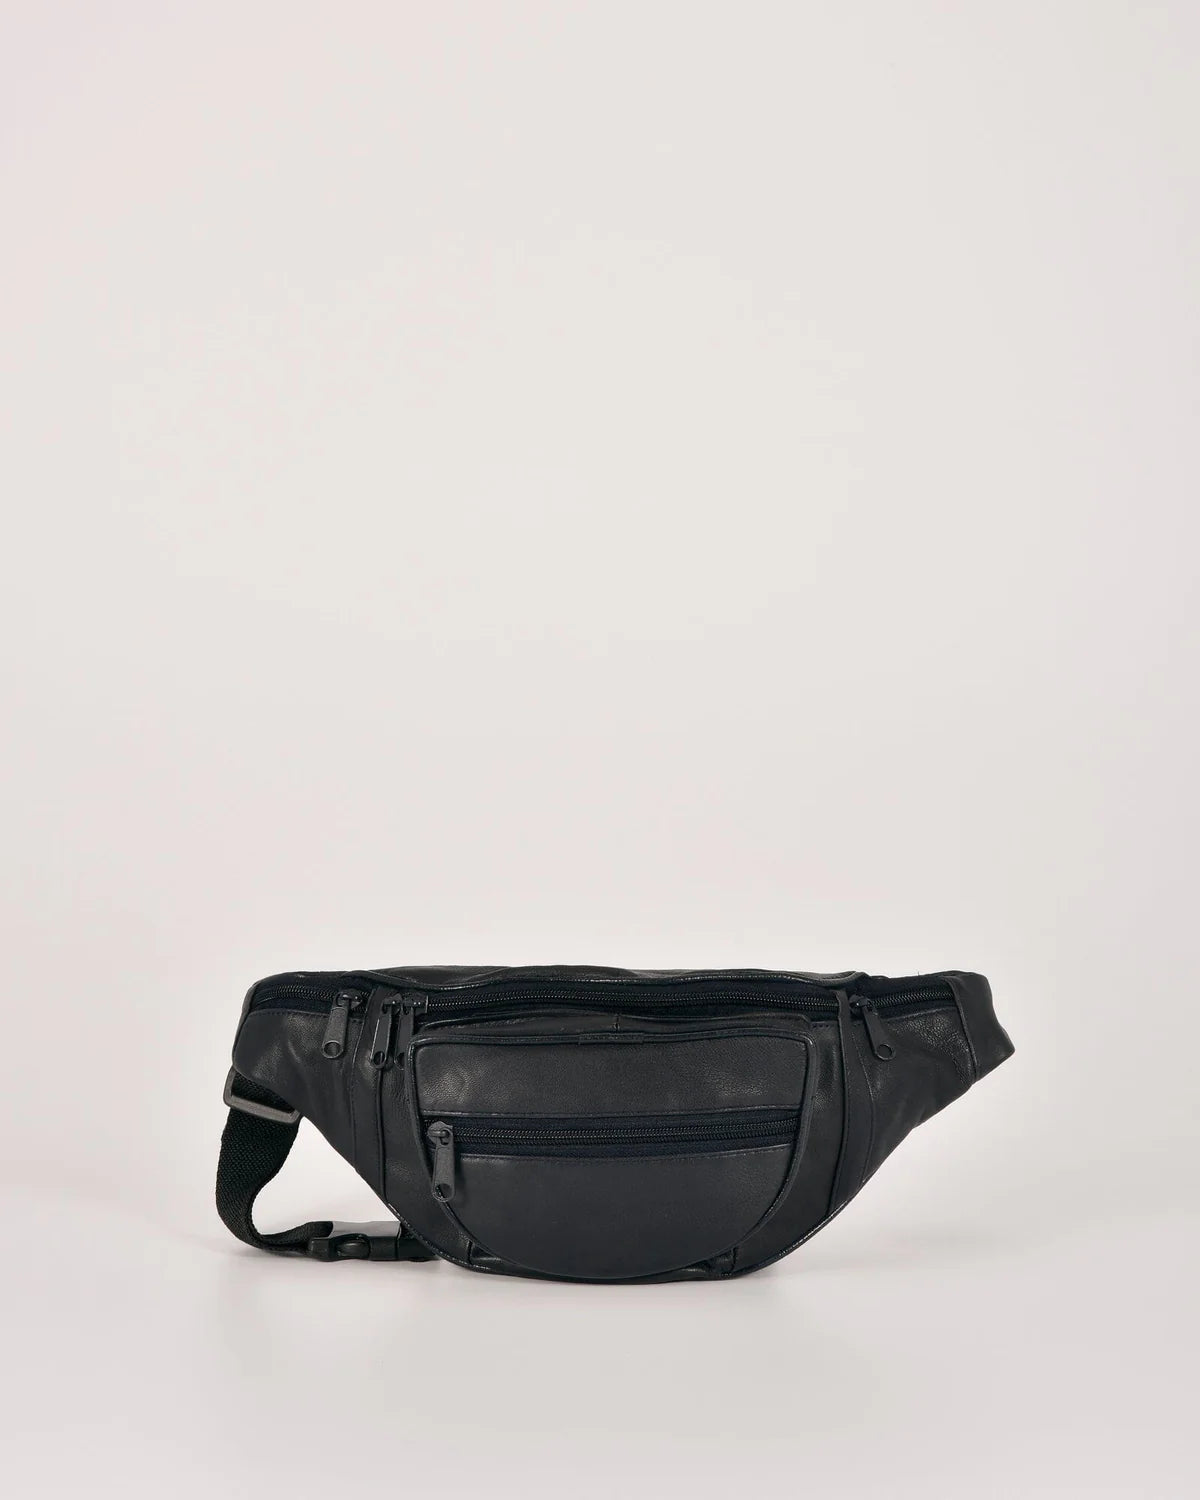 Cobb & Co - Leather Waist bag